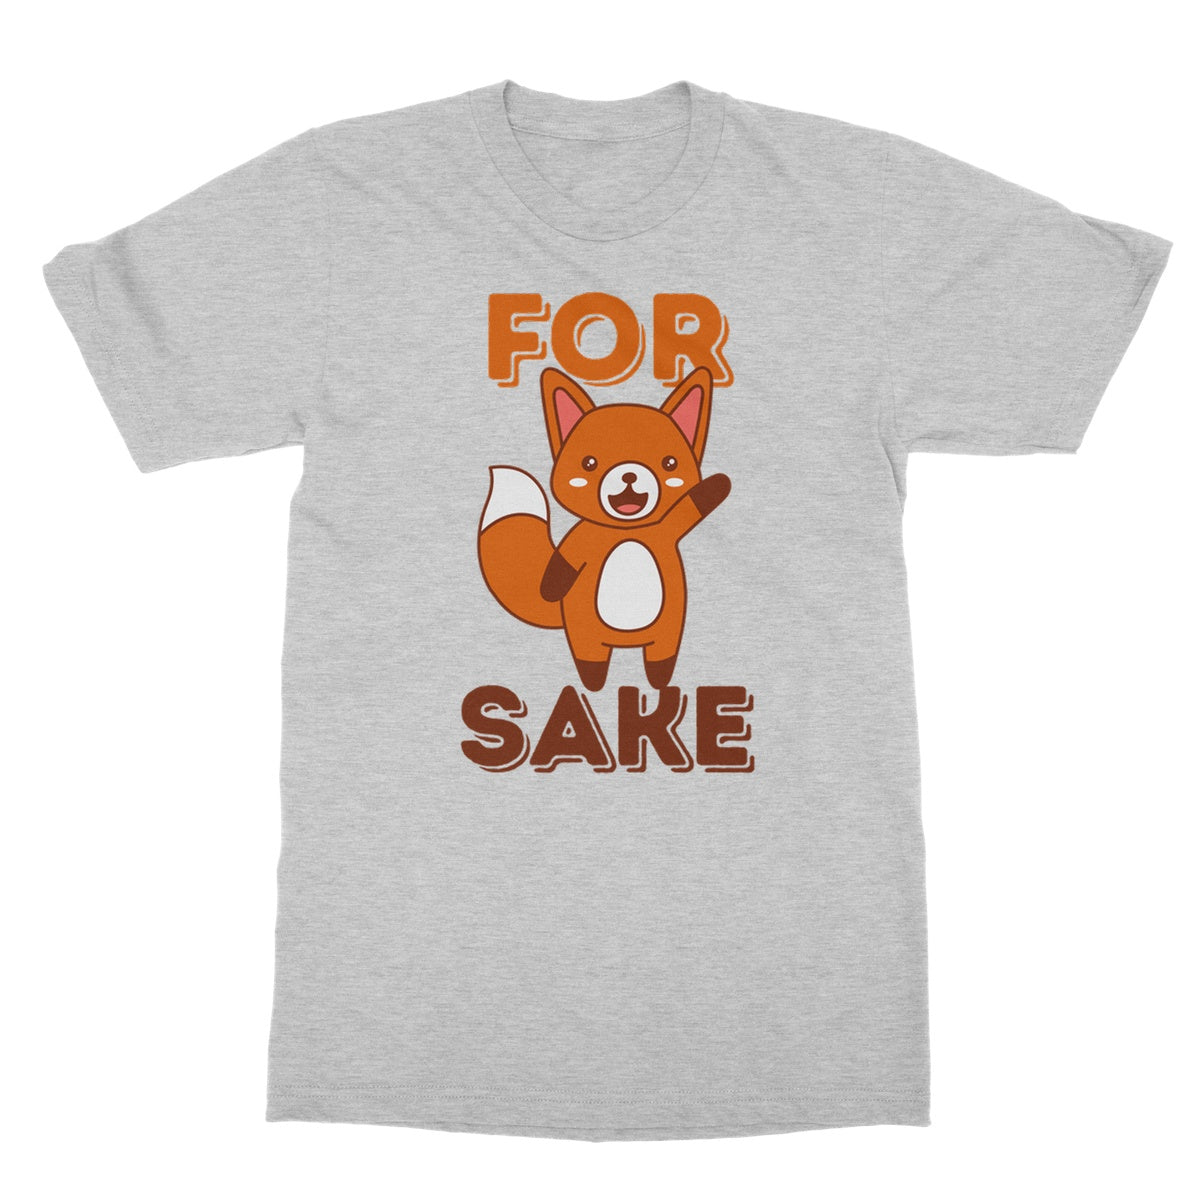 for fox sake t shirt grey